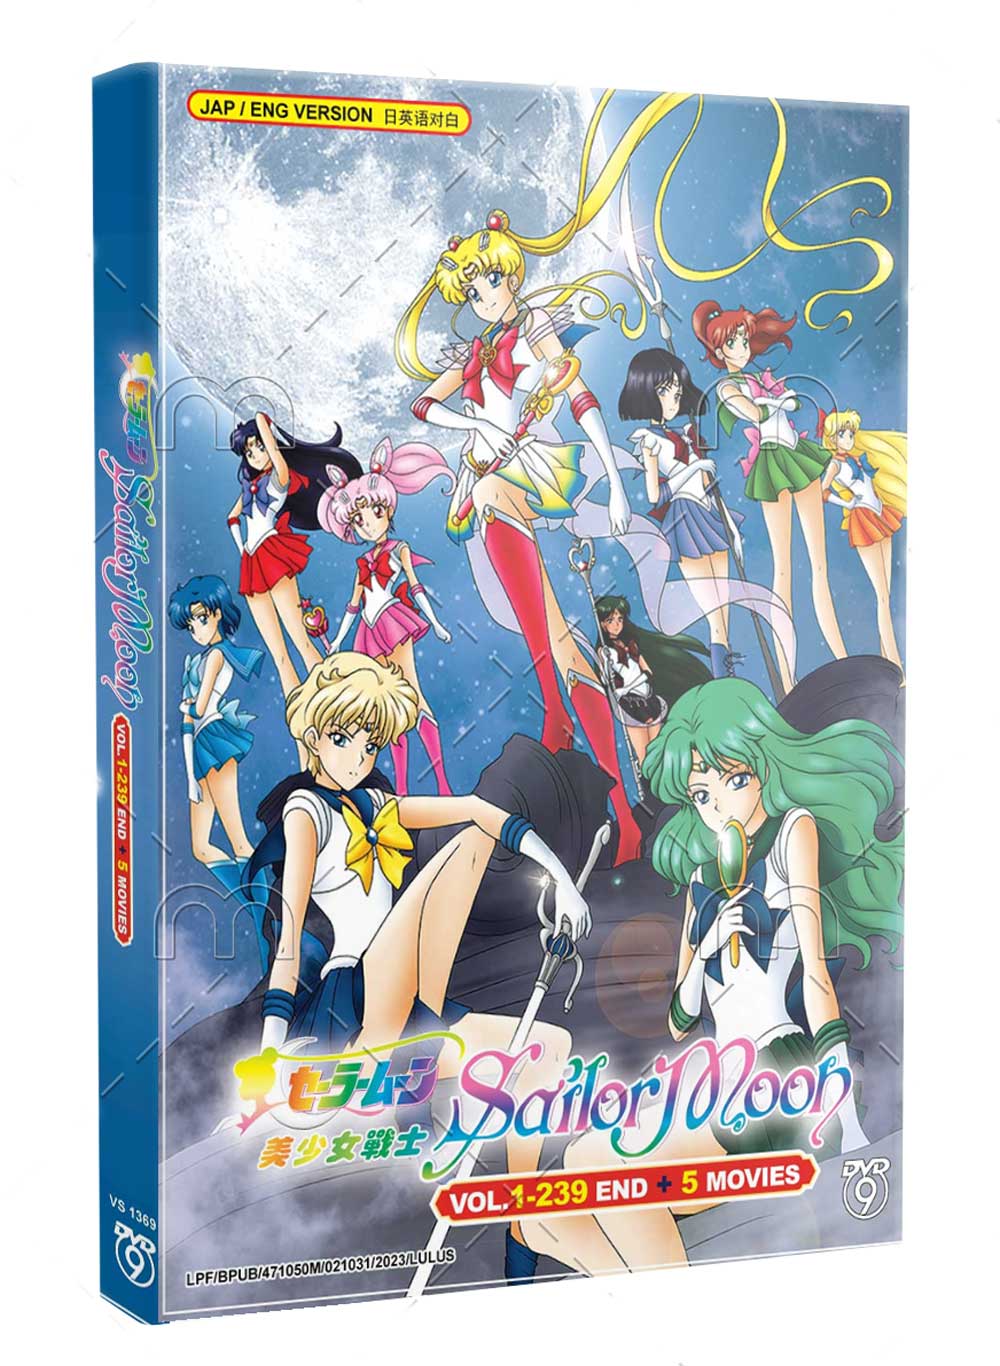 美少女戦士セーラームーン Vol 1-239 + 5 Movies (DVD) () アニメ